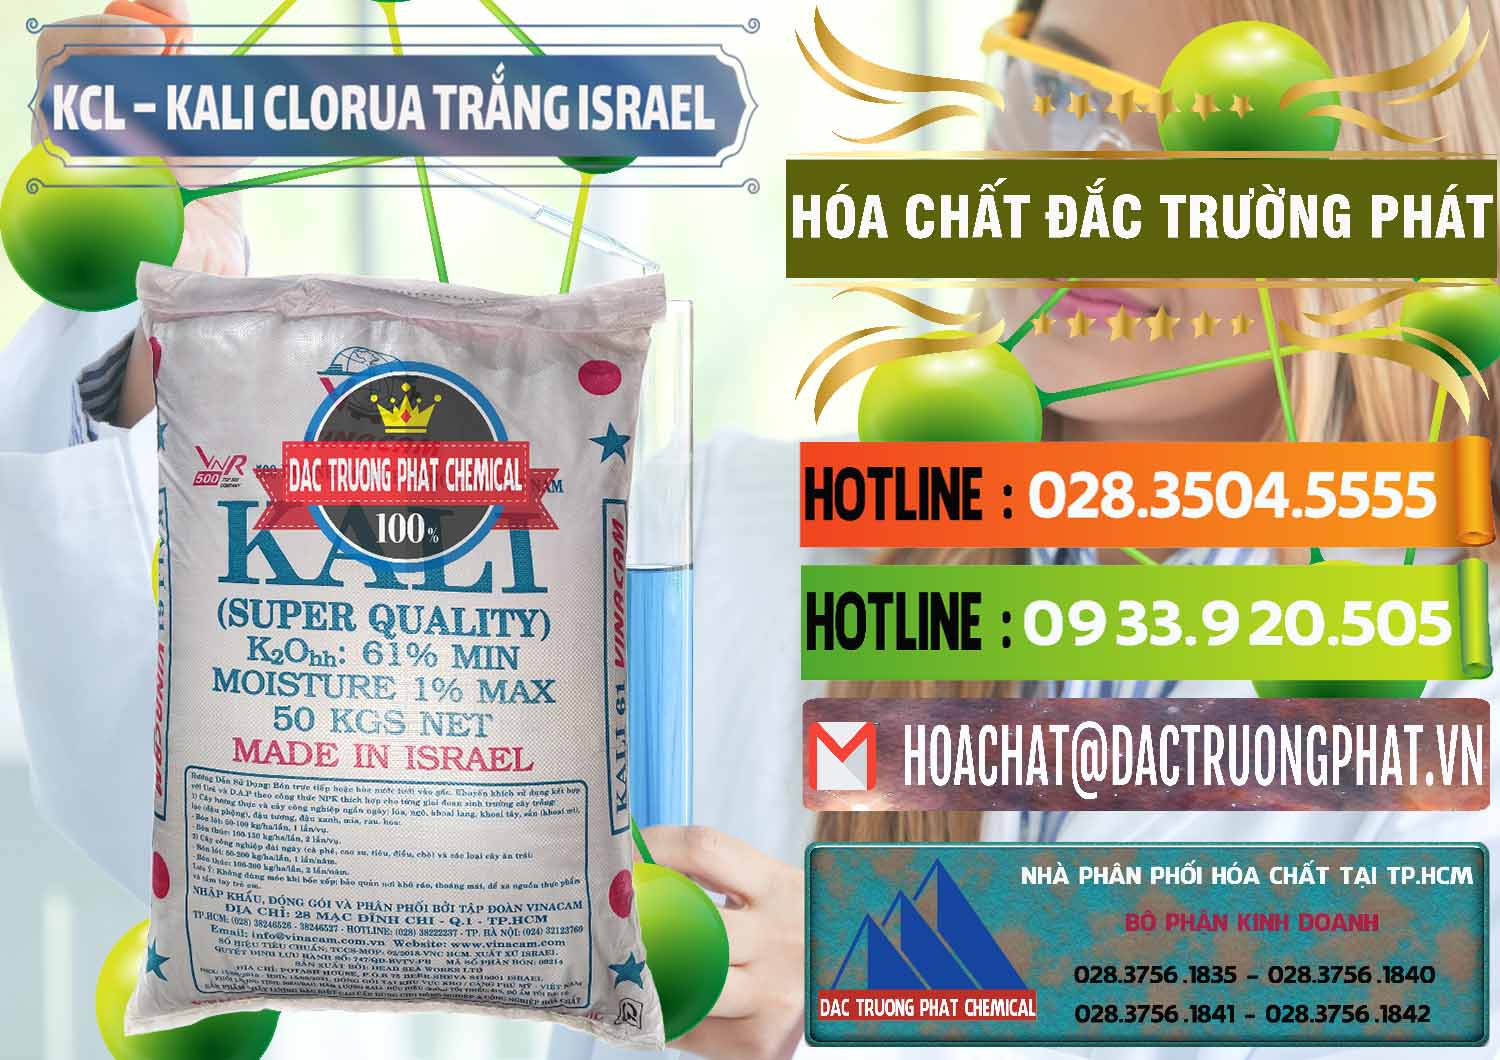 Nơi bán & cung ứng KCL – Kali Clorua Trắng Israel - 0087 - Nơi phân phối ( bán ) hóa chất tại TP.HCM - cungcaphoachat.com.vn